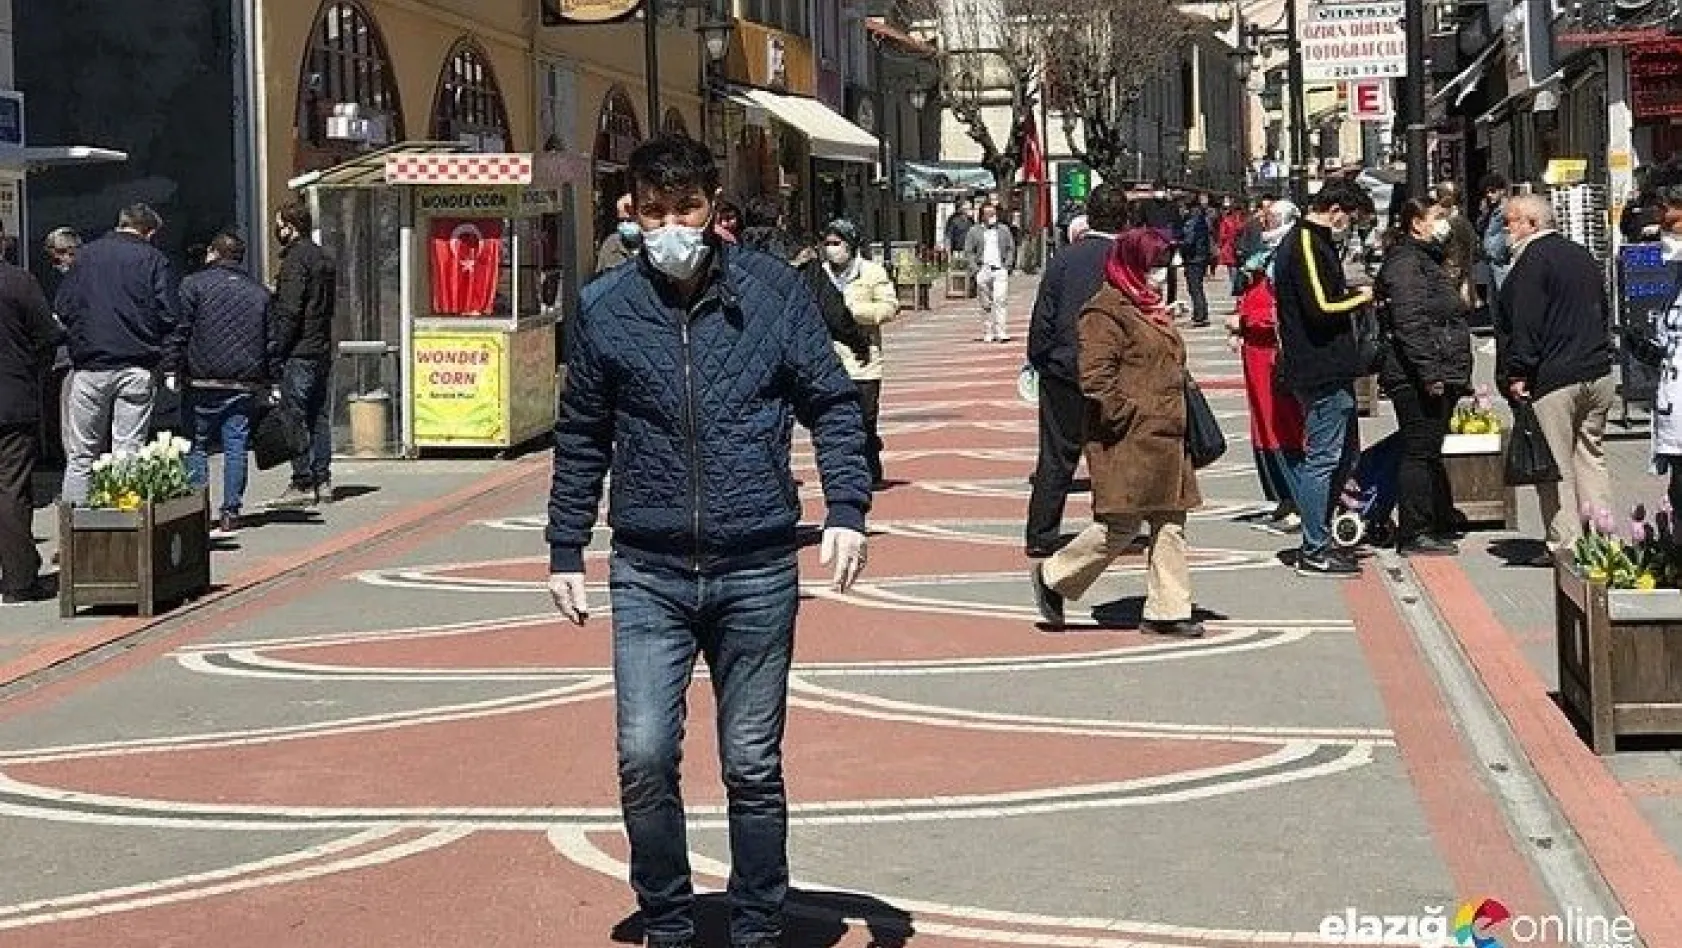 Tunceli'de caddelerde maskesiz dolaşmak yasaklandı